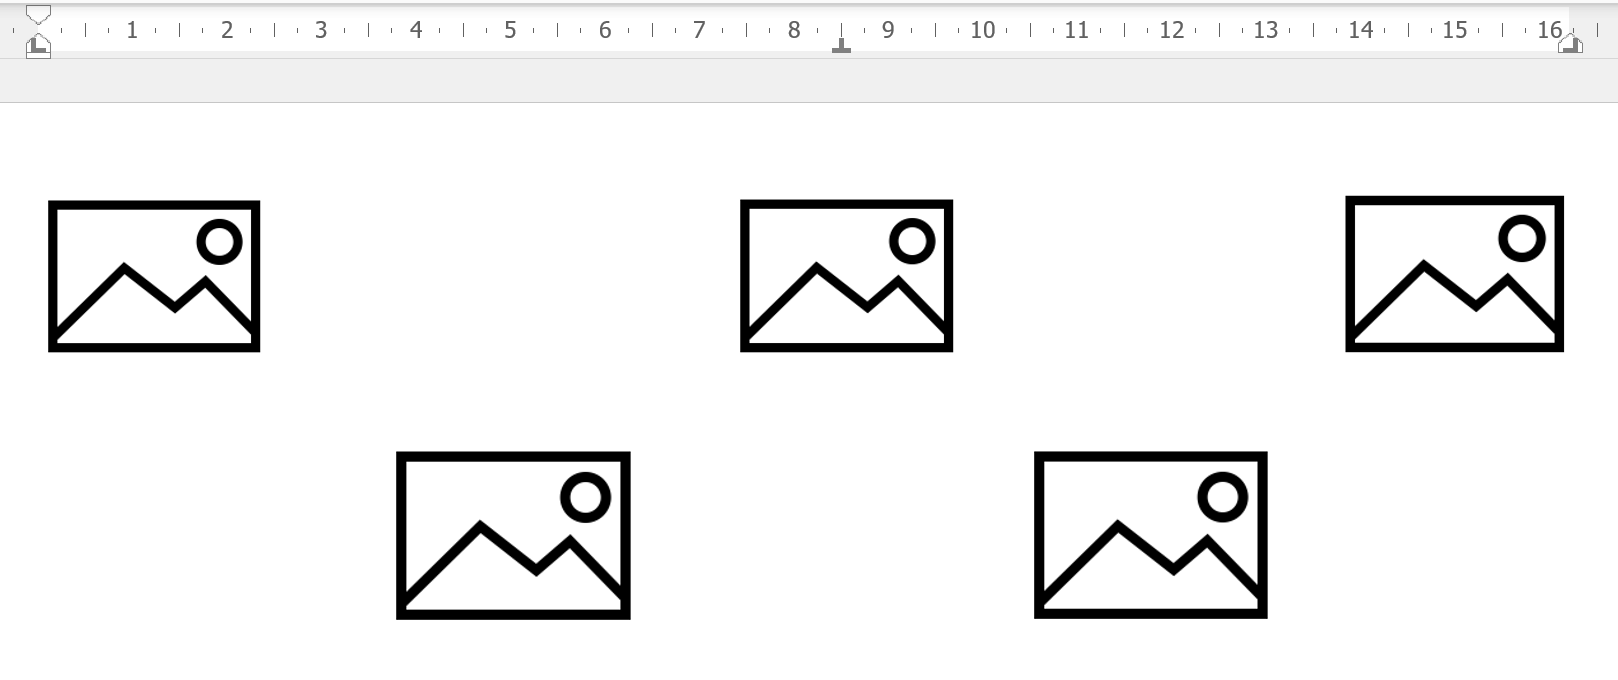 Capture d'écran montrant un alignement d'images grâce aux taquets de tabulation. La première ligne comprend une image à gauche, une image au centre et une autre à droite. La seconde ligne comprend deux images également alignées à l'aide de taquets, avec un espacement différent de la première ligne.